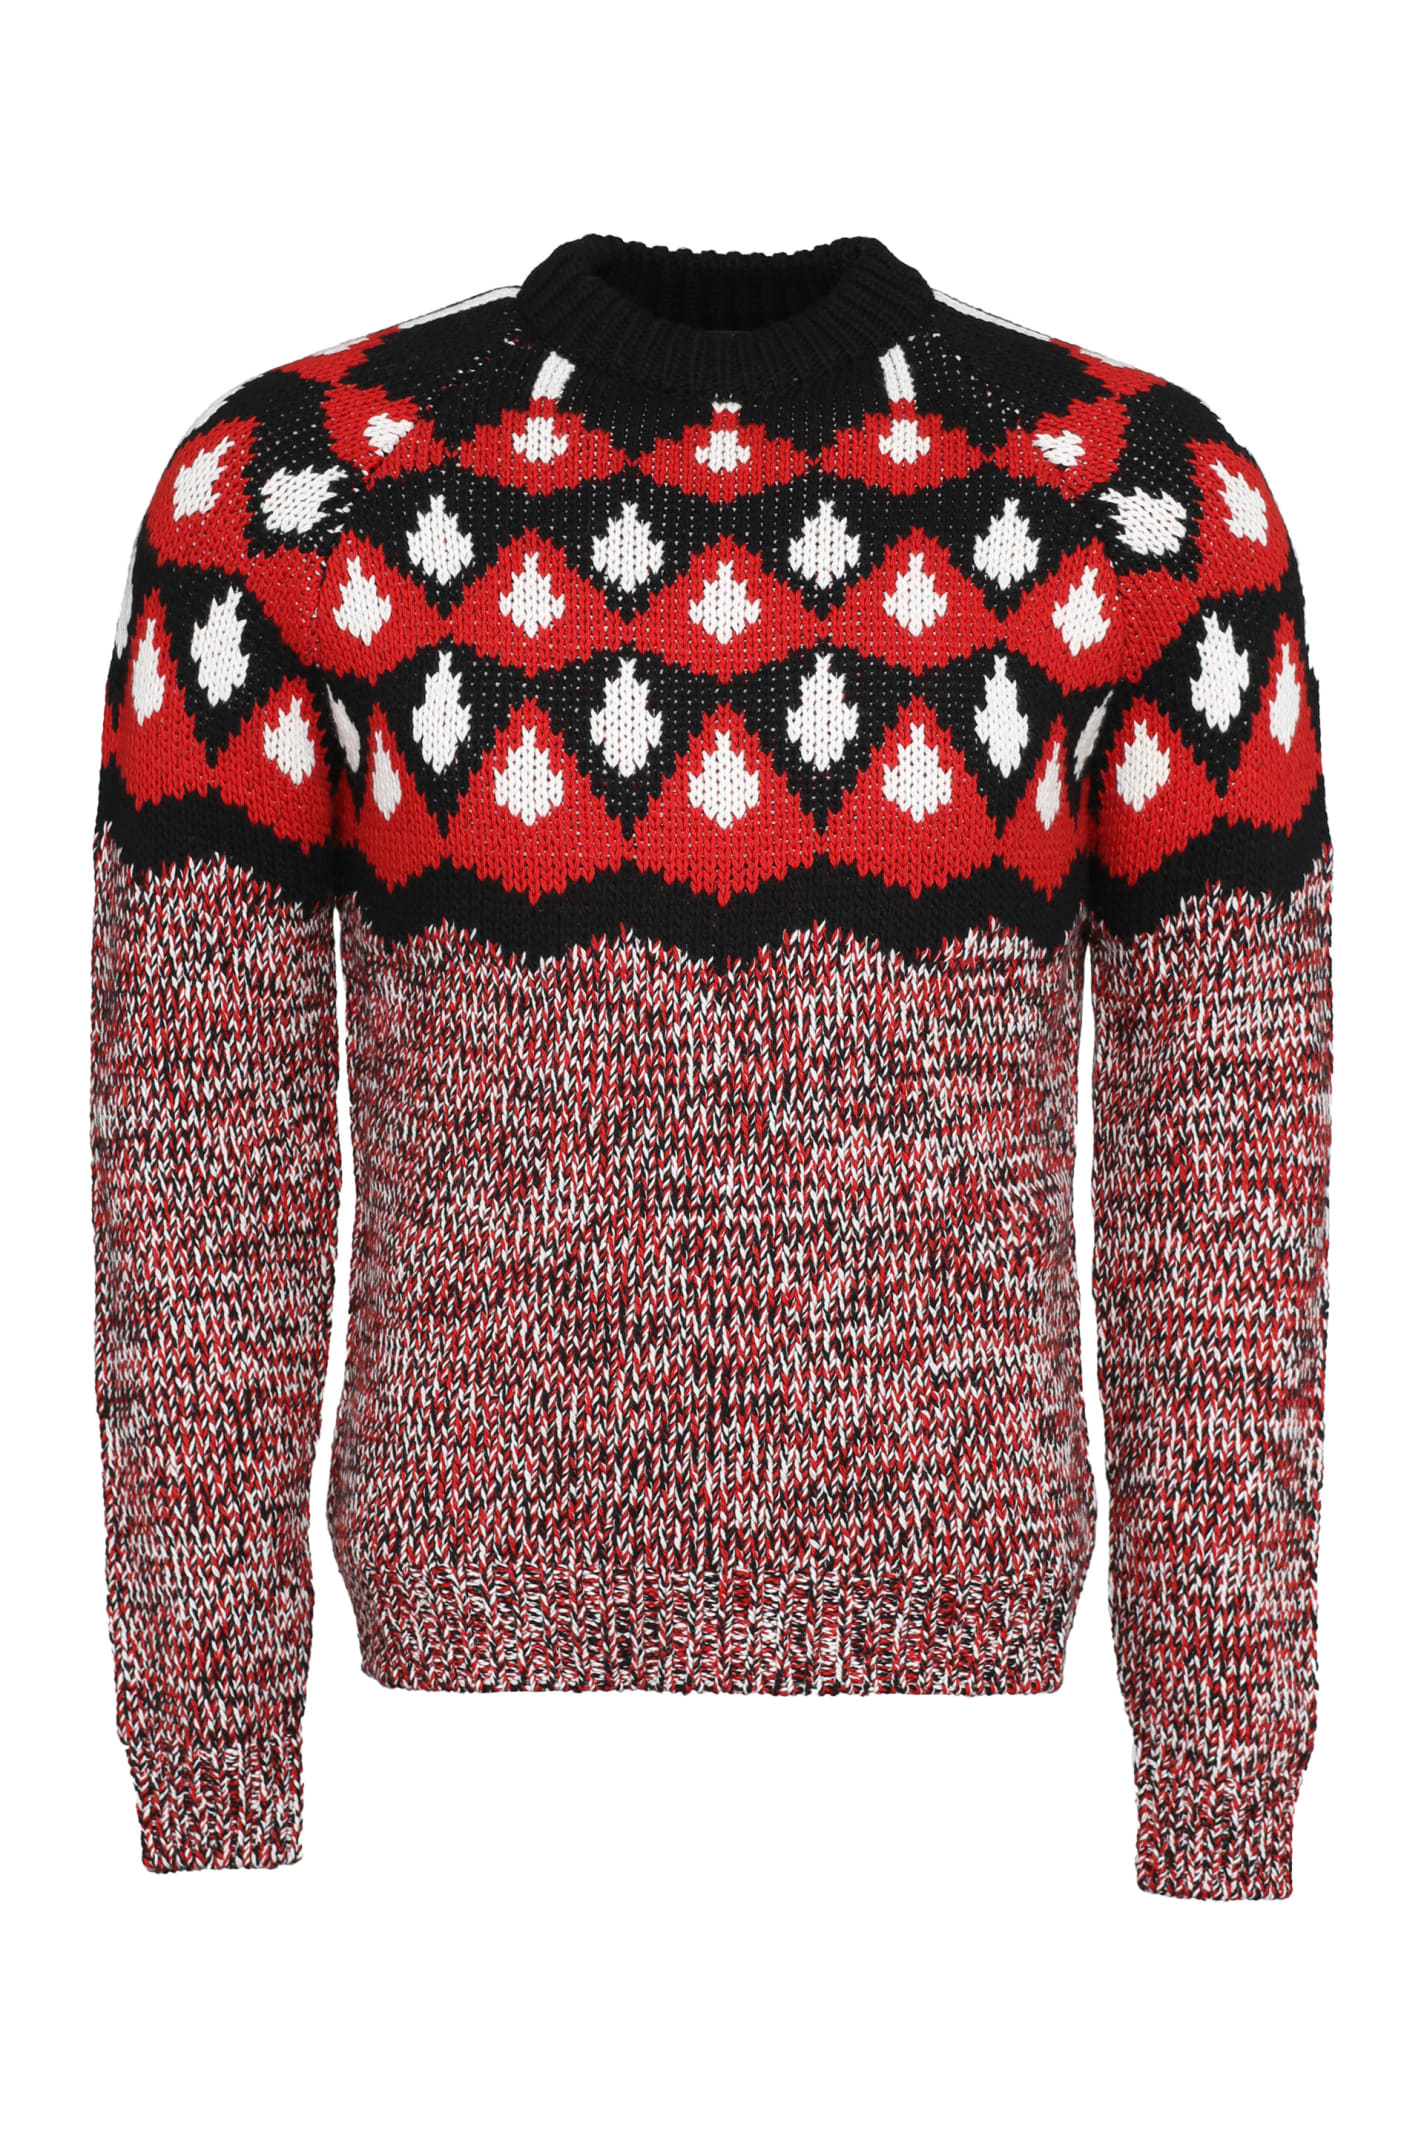 Prada Jacquard Sweater